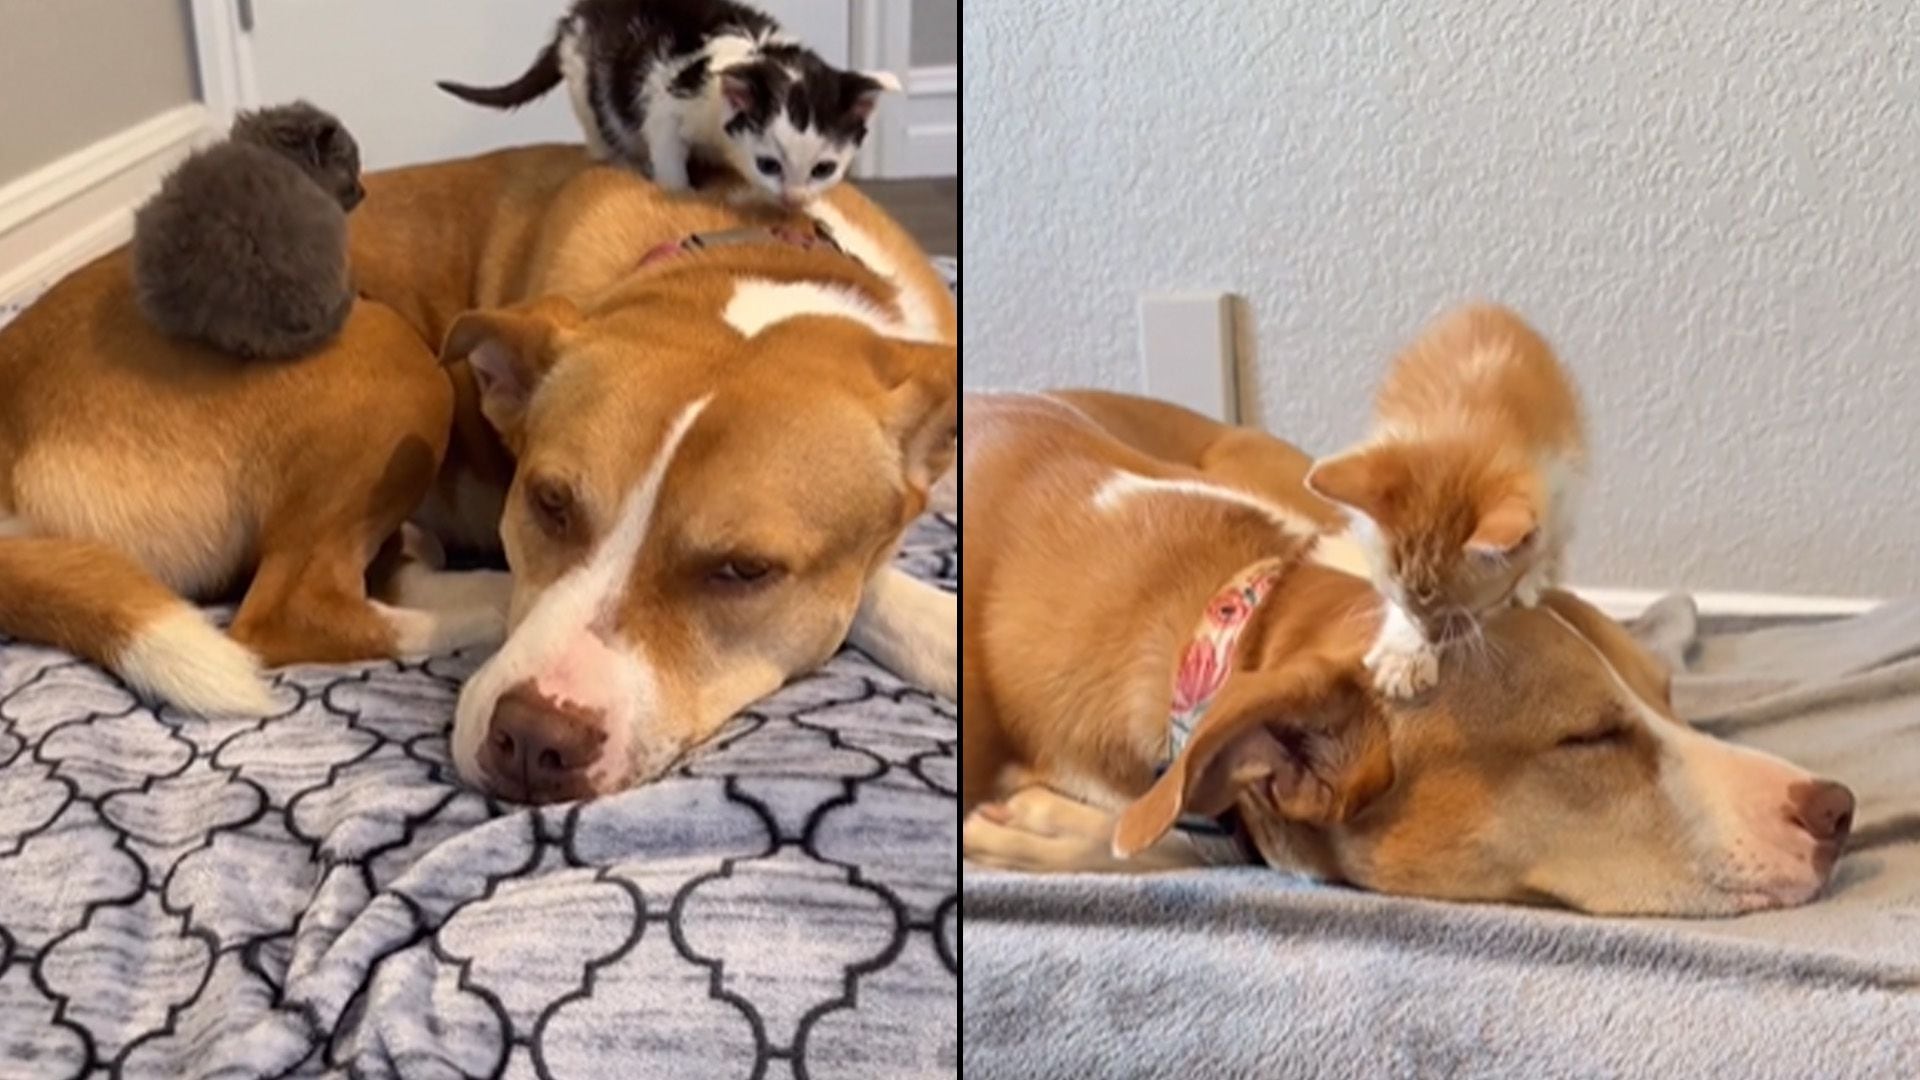 Ginger se convirtió en la madre sustituta para decenas de gatos rescatados y que esperan un hogar permanente. (Instagram/Shick403)

Perros, pitbulls, razas de perros, animales, mascotas, adopción, gatos, felinos, noticias de animales, noticias de mascotas